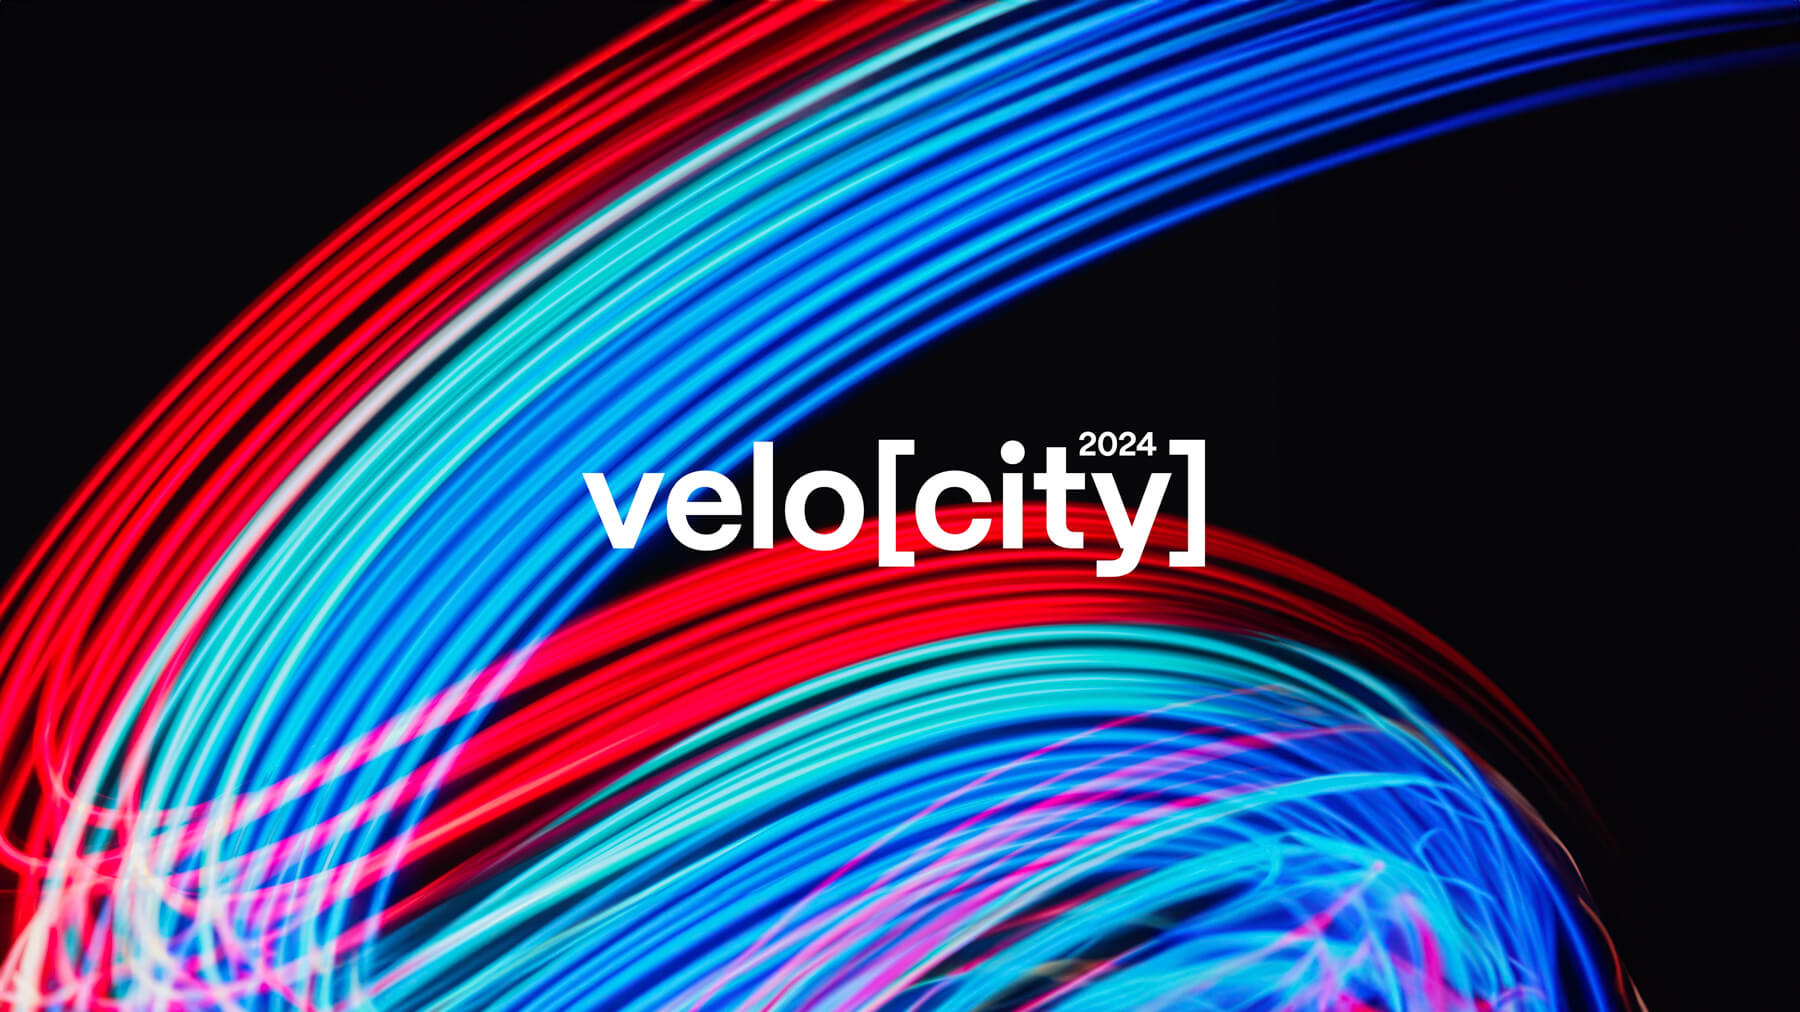 velocity 2024 events